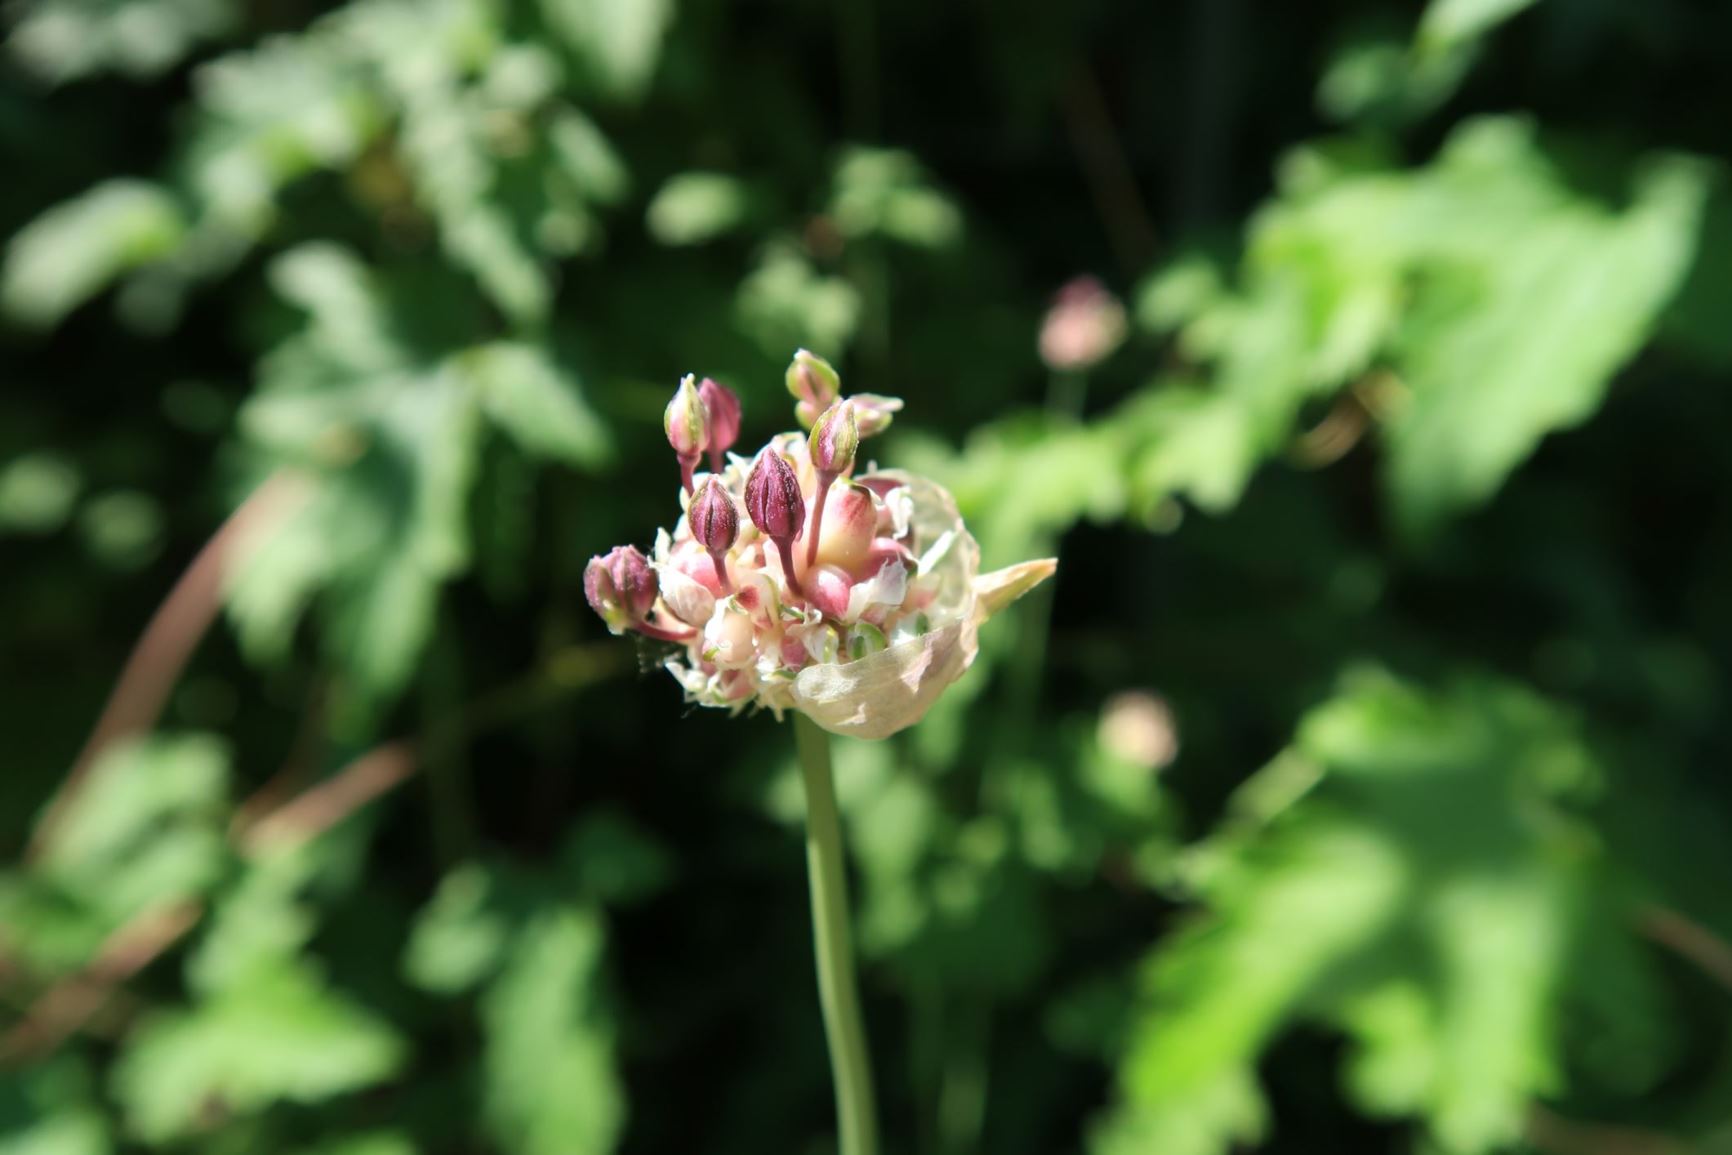 Allium scorodoprasum - Schlangen-Lauch, sand leek